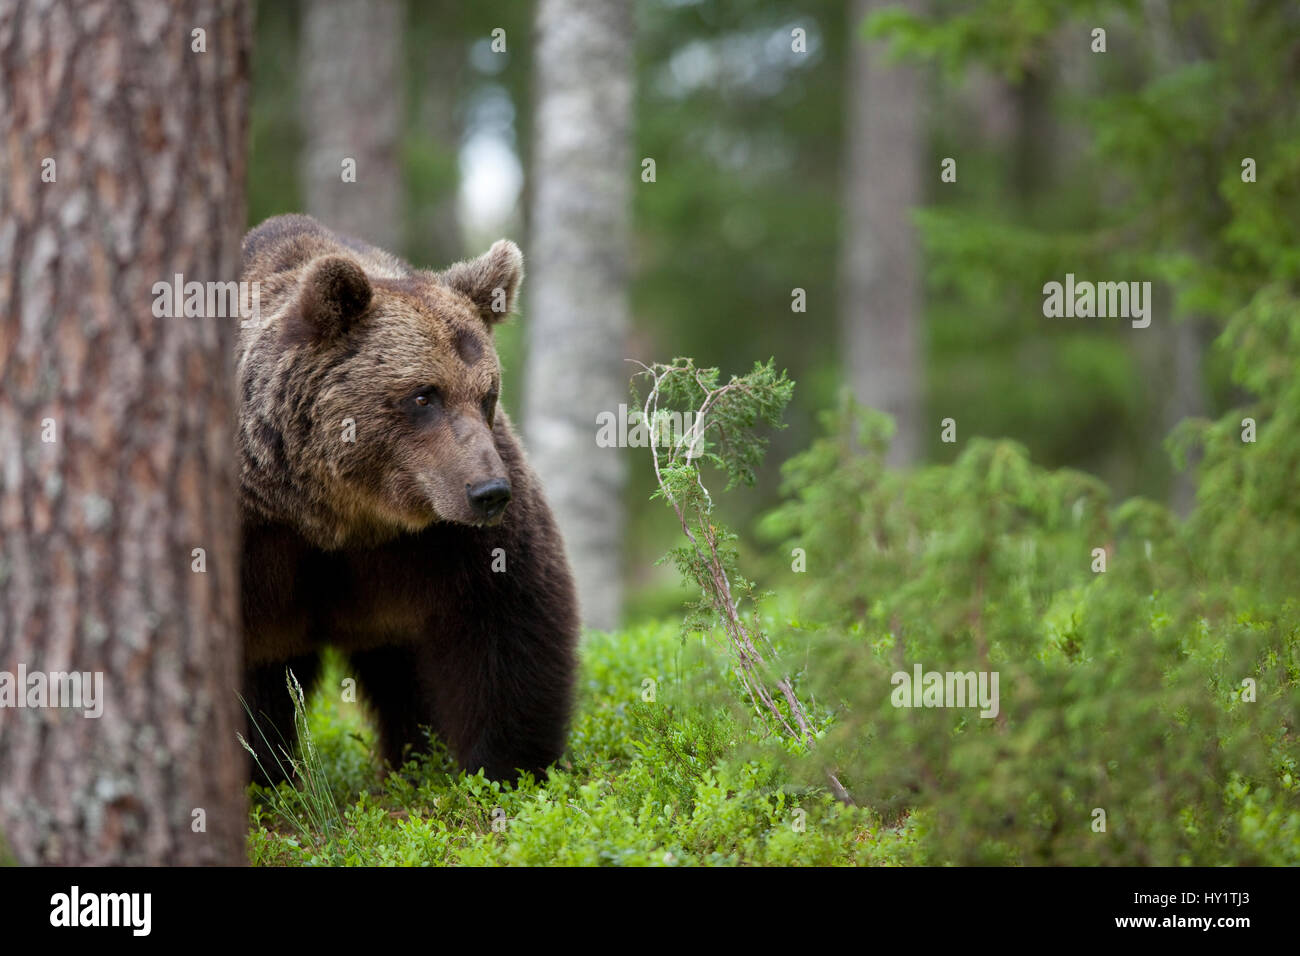 Unión oso pardo (Ursus arctos) merodea a través del bosque, Finlandia. Foto de stock